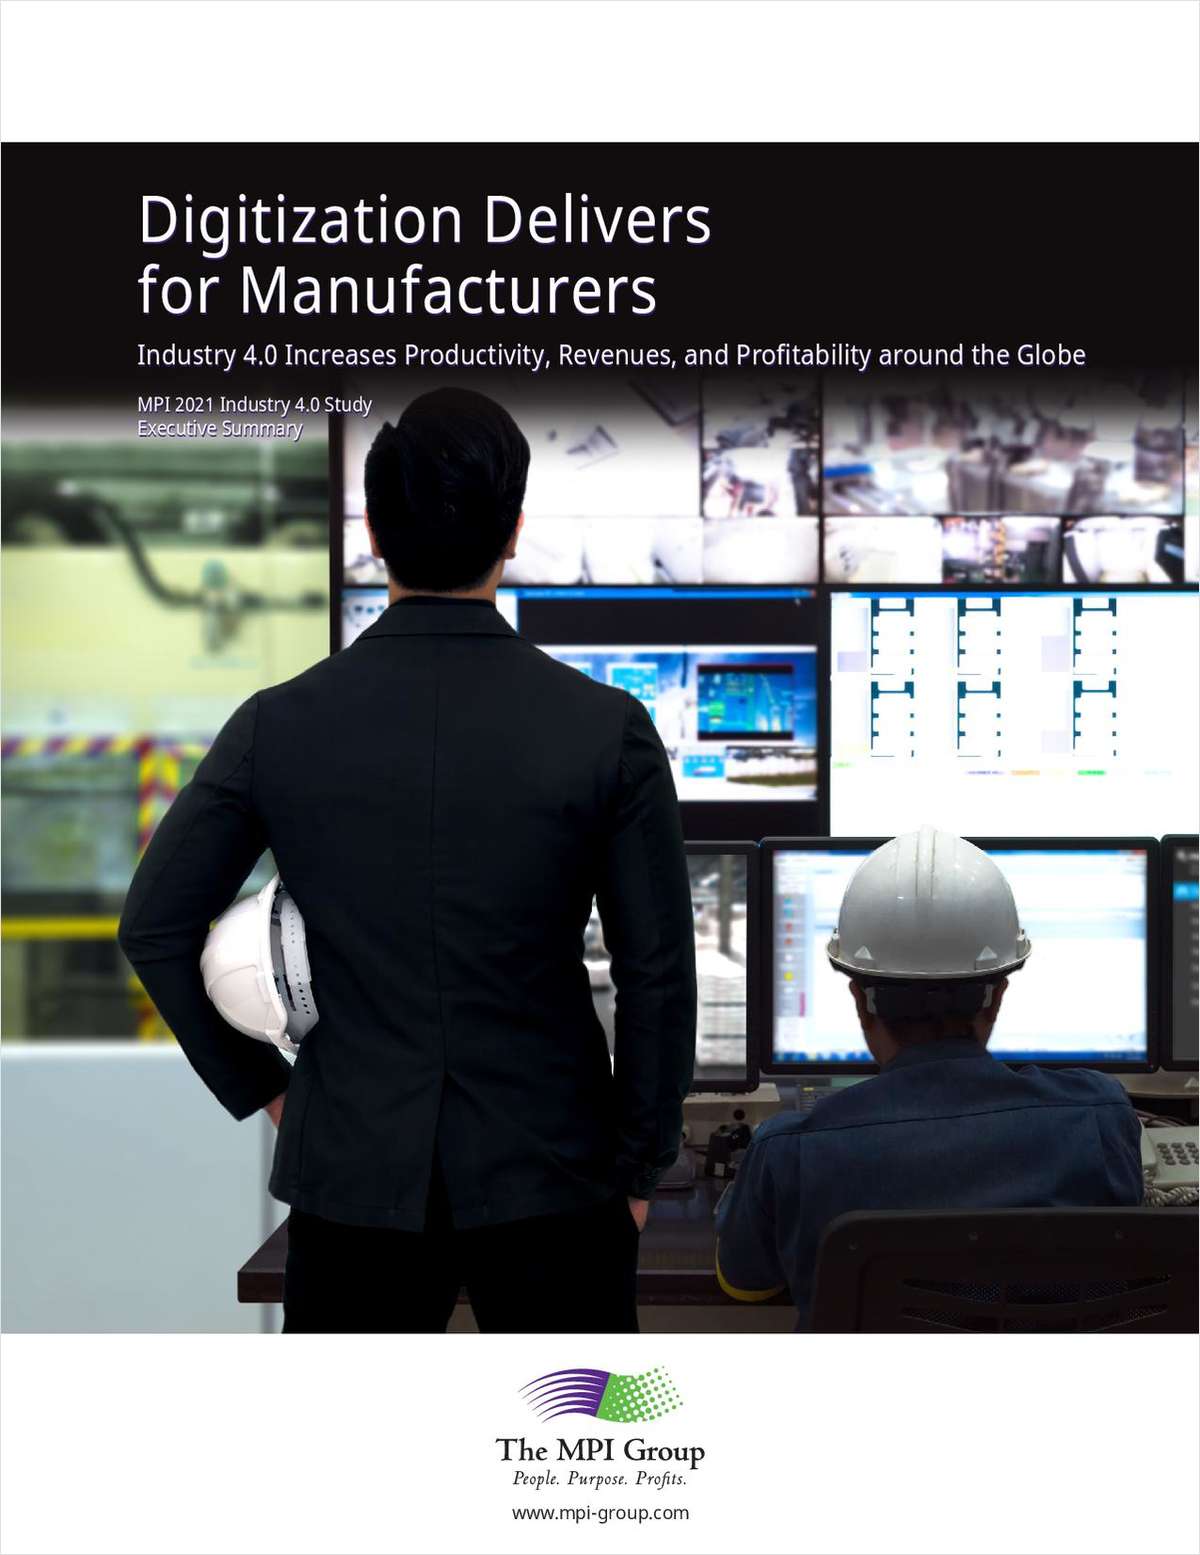 Digitalization Delivers for Manufacturers